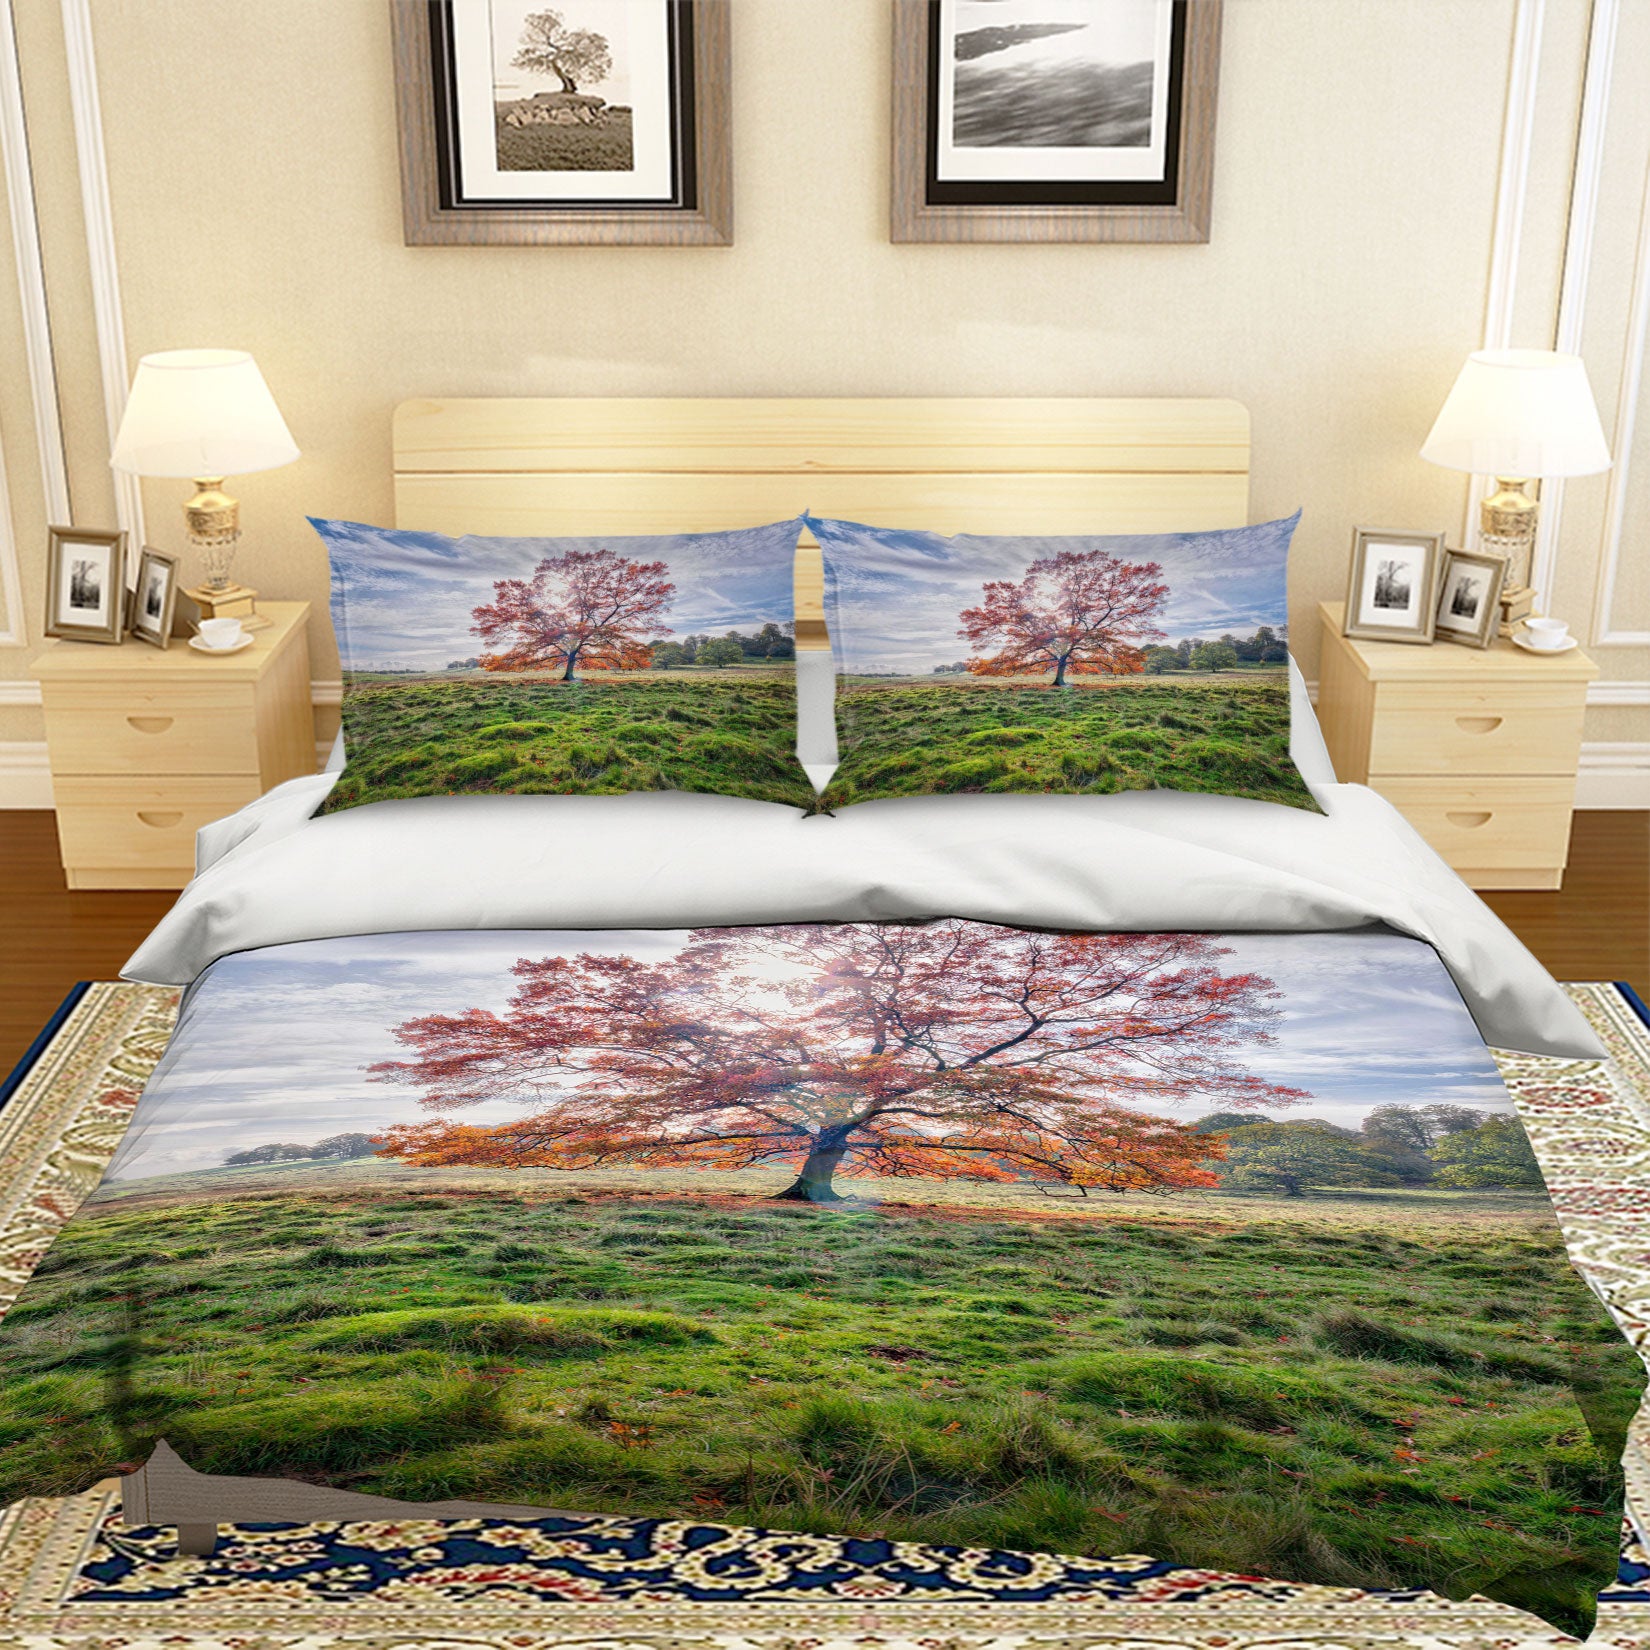 3D Lawn Mangrove 1062 Assaf Frank Bedding Bed Pillowcases Quilt